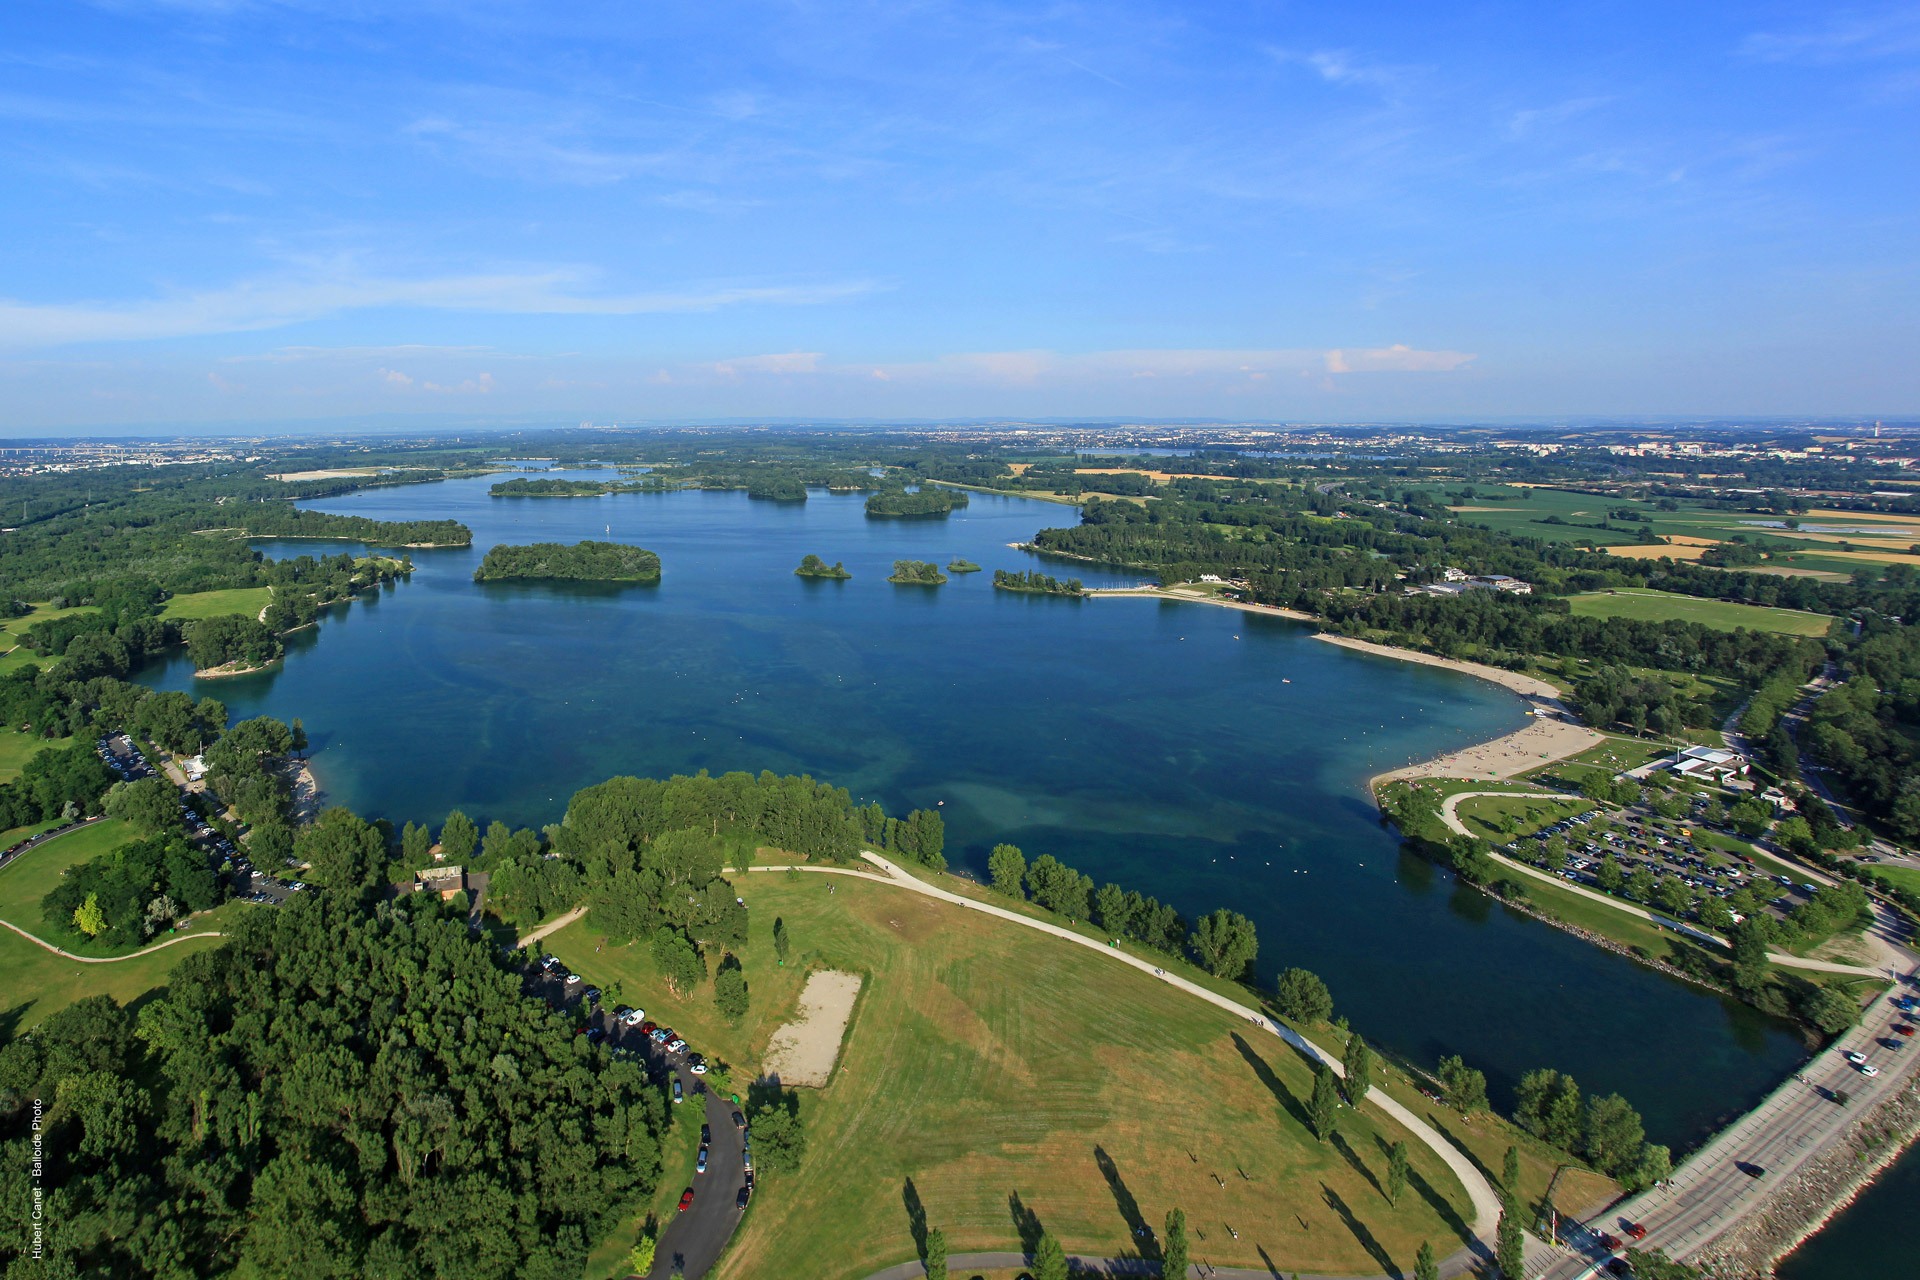 Vue aérienne du Grand Parc de Miribel-Jonage - photo Hubert Canet